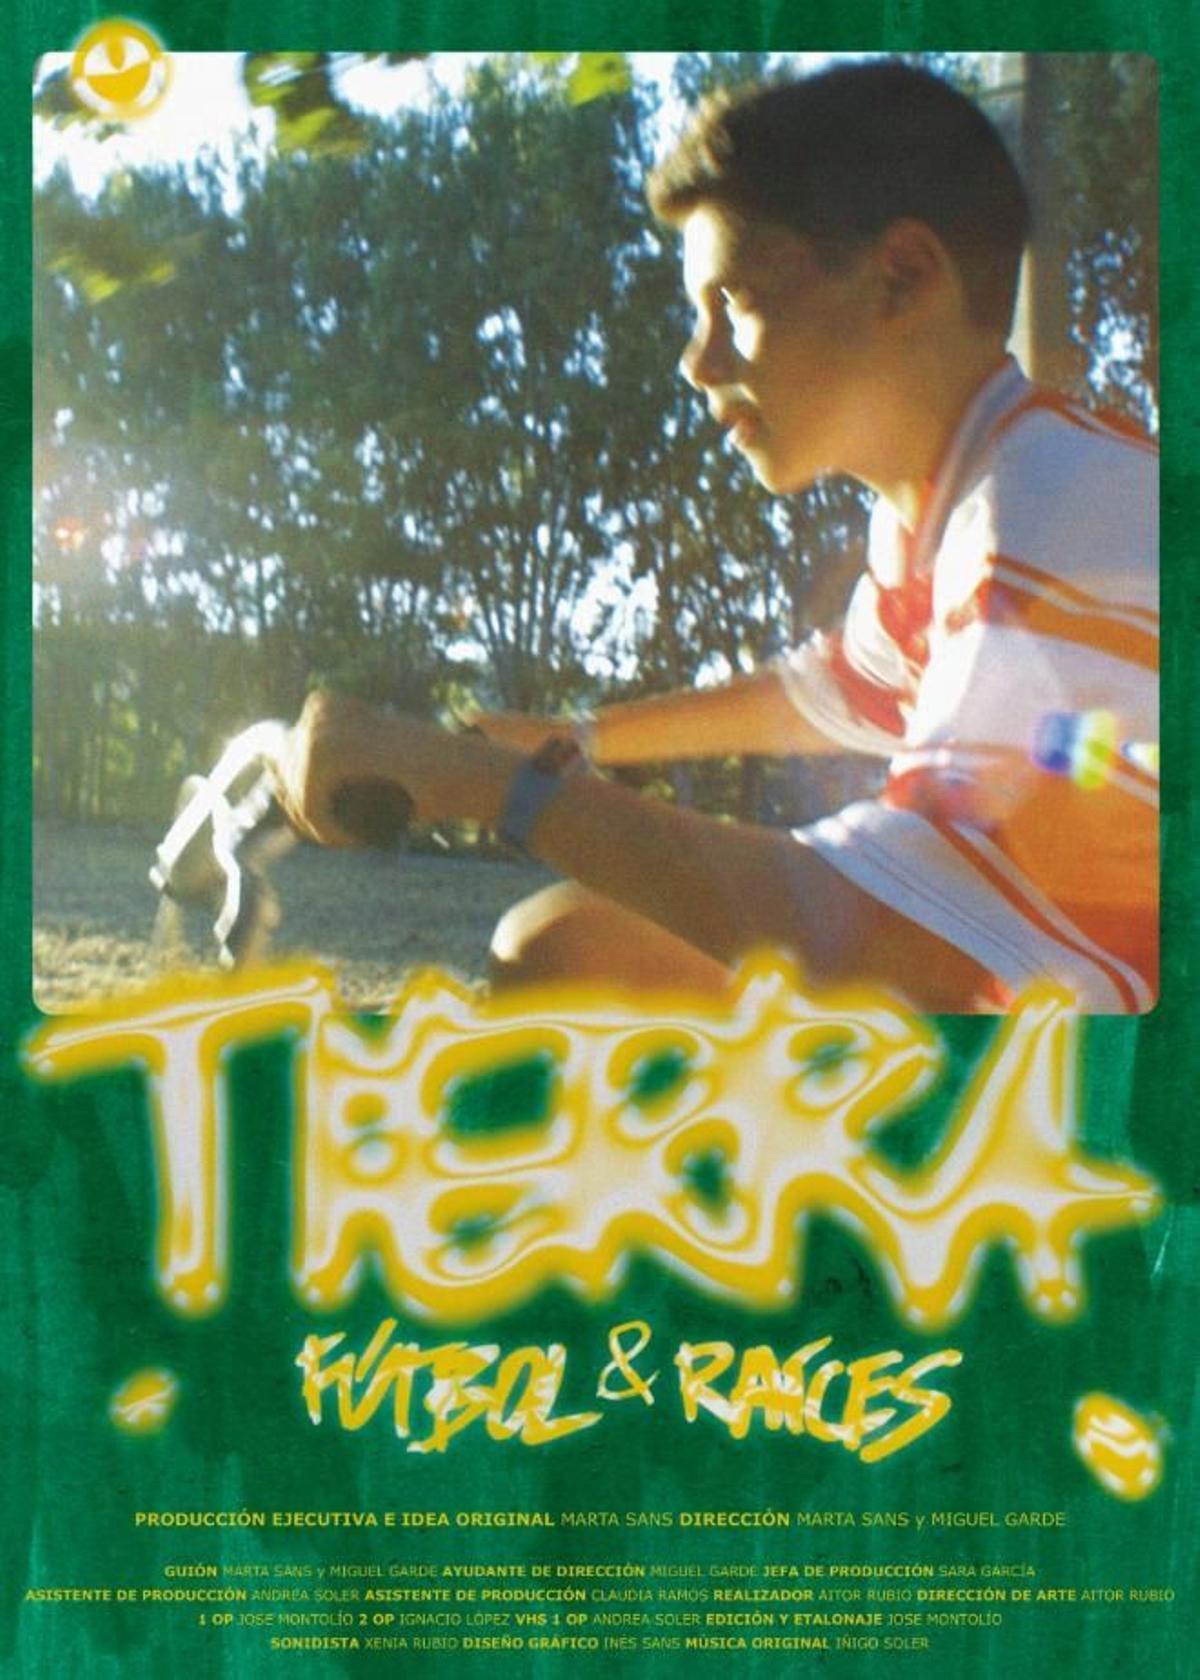 Cartel oficial del documental 'T1ERRA'